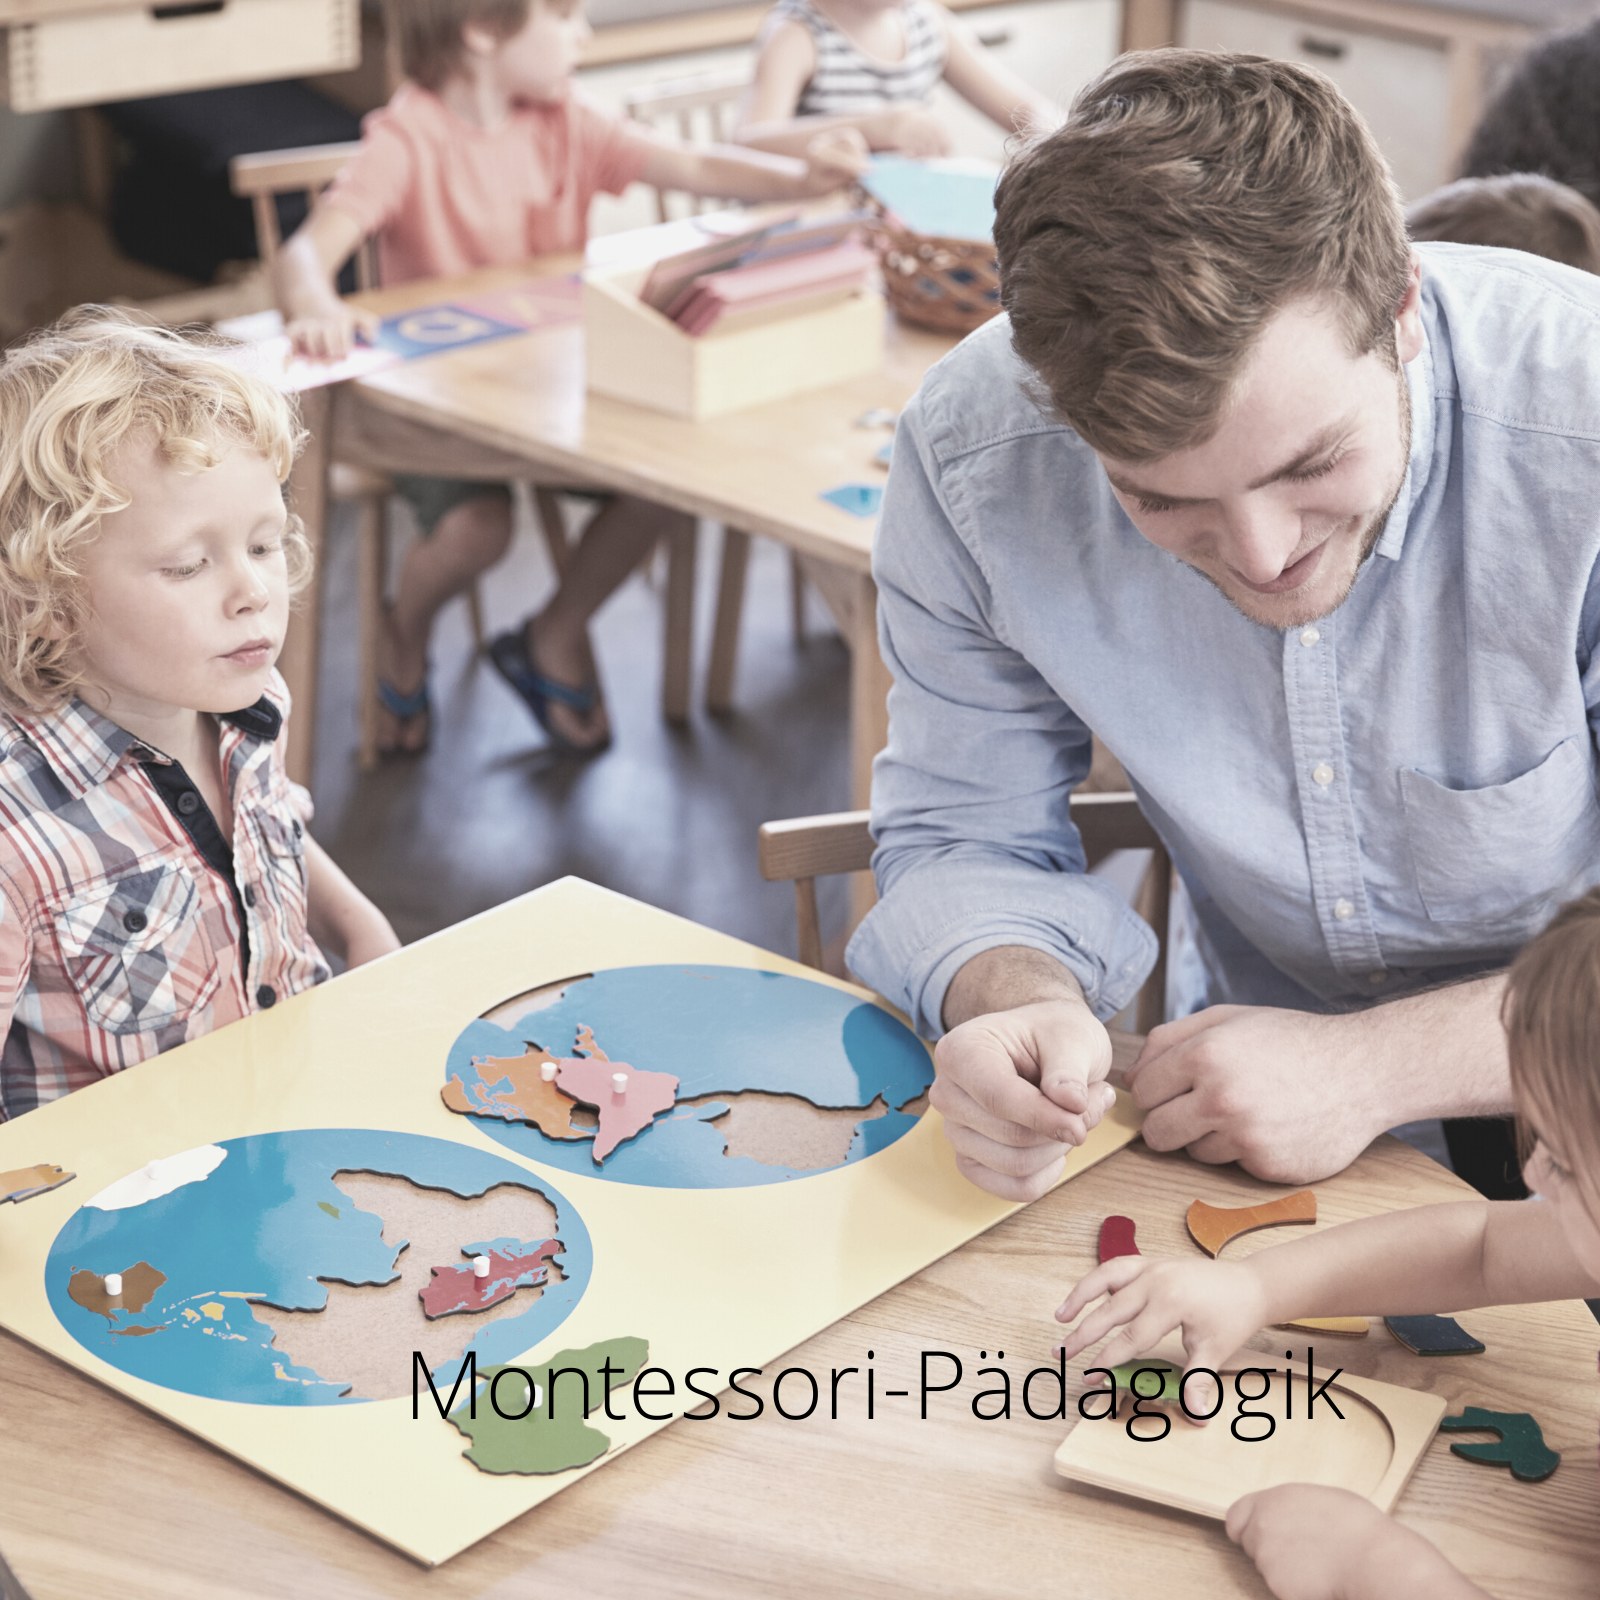 "Montessori-Pädagogik, was ist das eigentlich?"